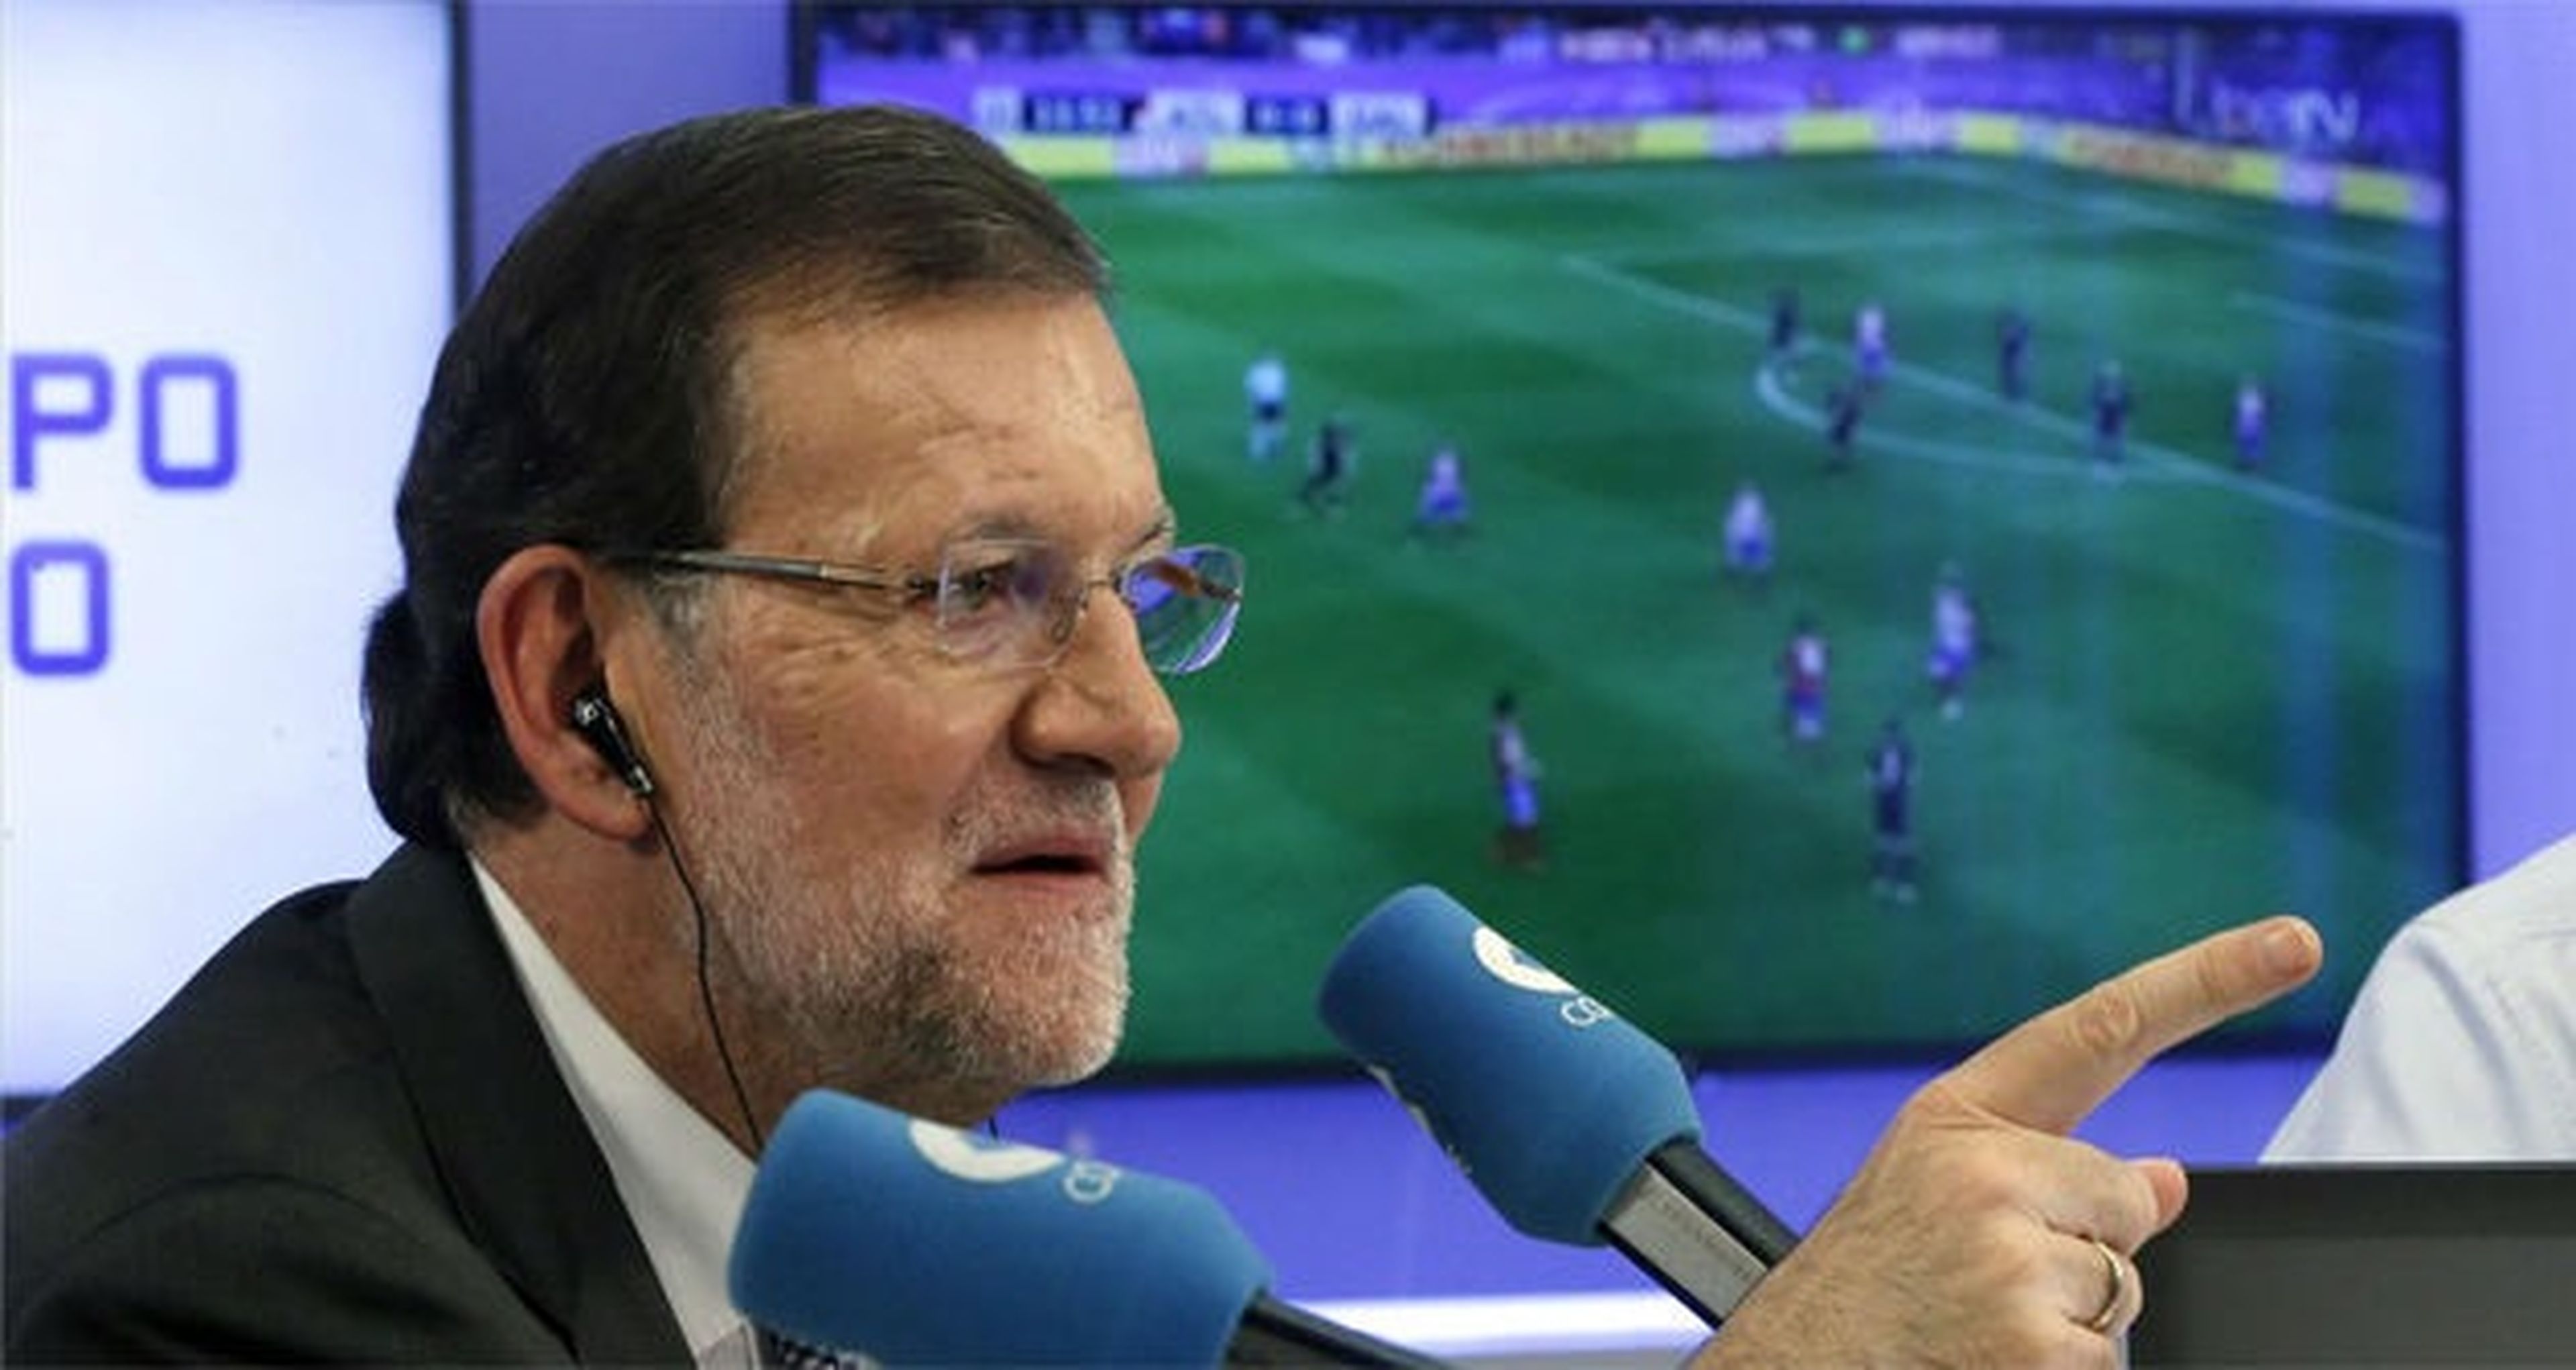 FIFA 16, el hijo de Rajoy critica los comentarios de Manolo Lama en La Cope